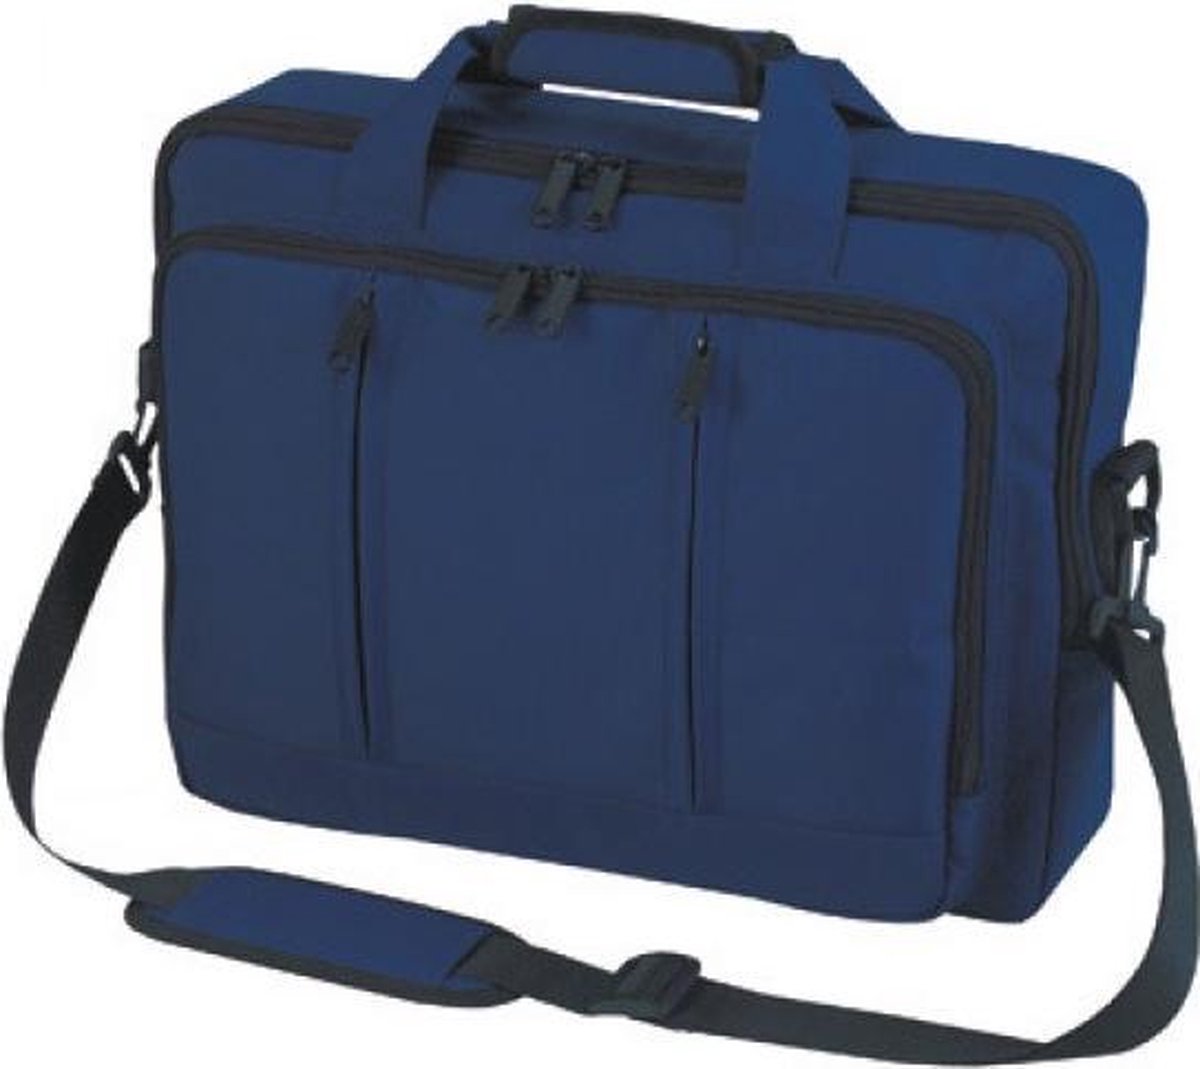 Laptop backpack Economy (Marine)